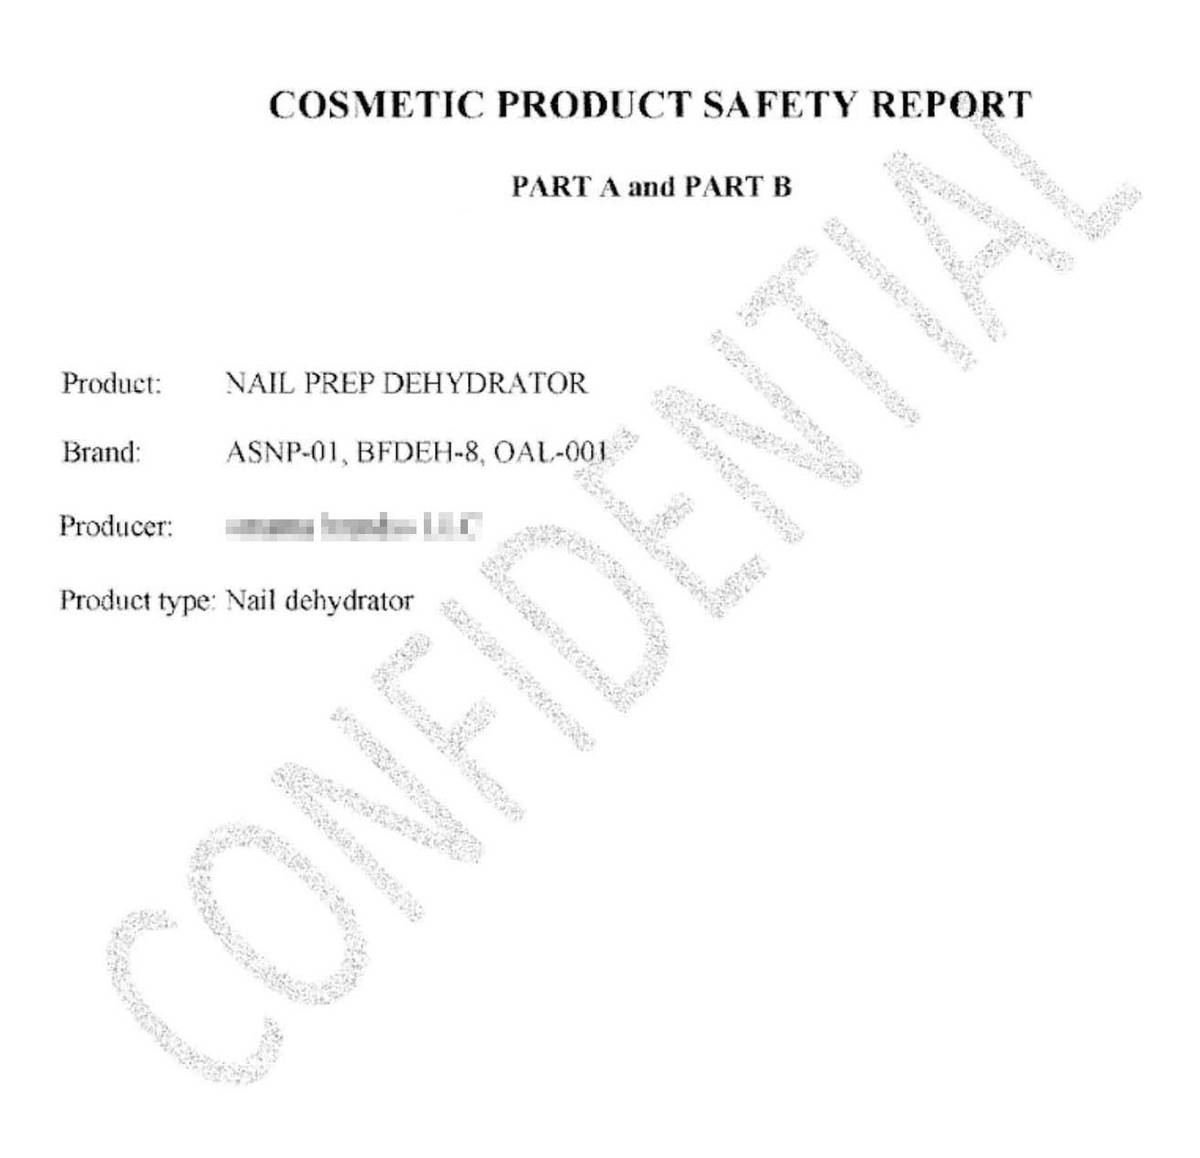 Это первая страница отчета о безопасности, на основании которого мы зарегистрировали продукцию в CPNP. Надпись по диагонали намекает, что документ строго конфиденциален, поэтому показать его содержимое я не могу